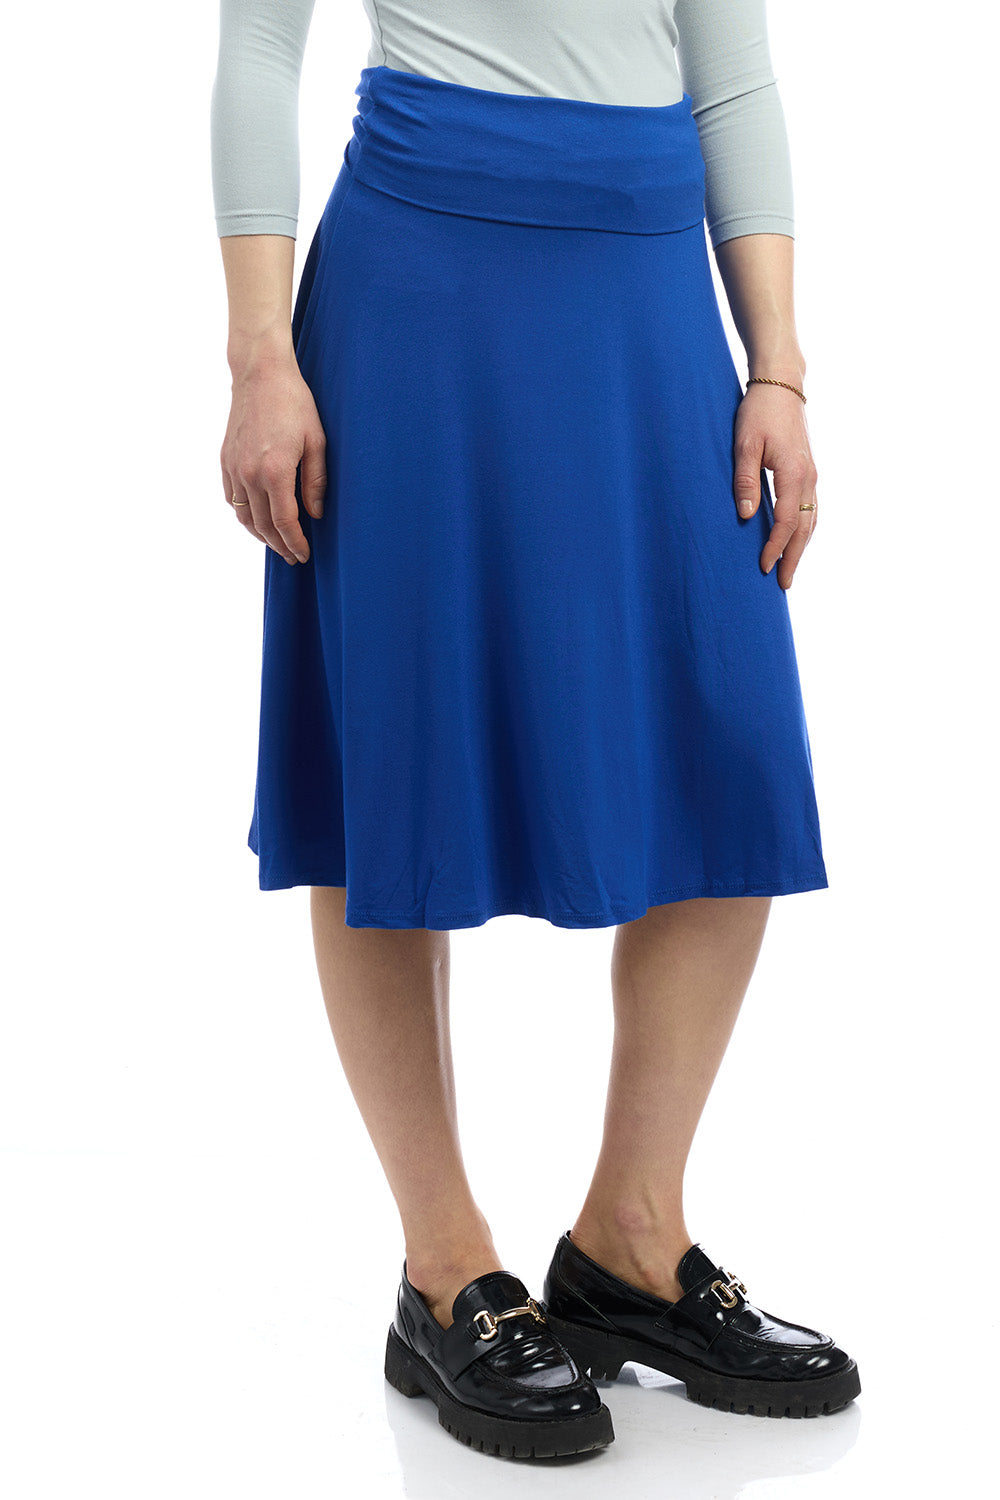 Old Navy inspired below knee length foldover flary midi royal blue skirt